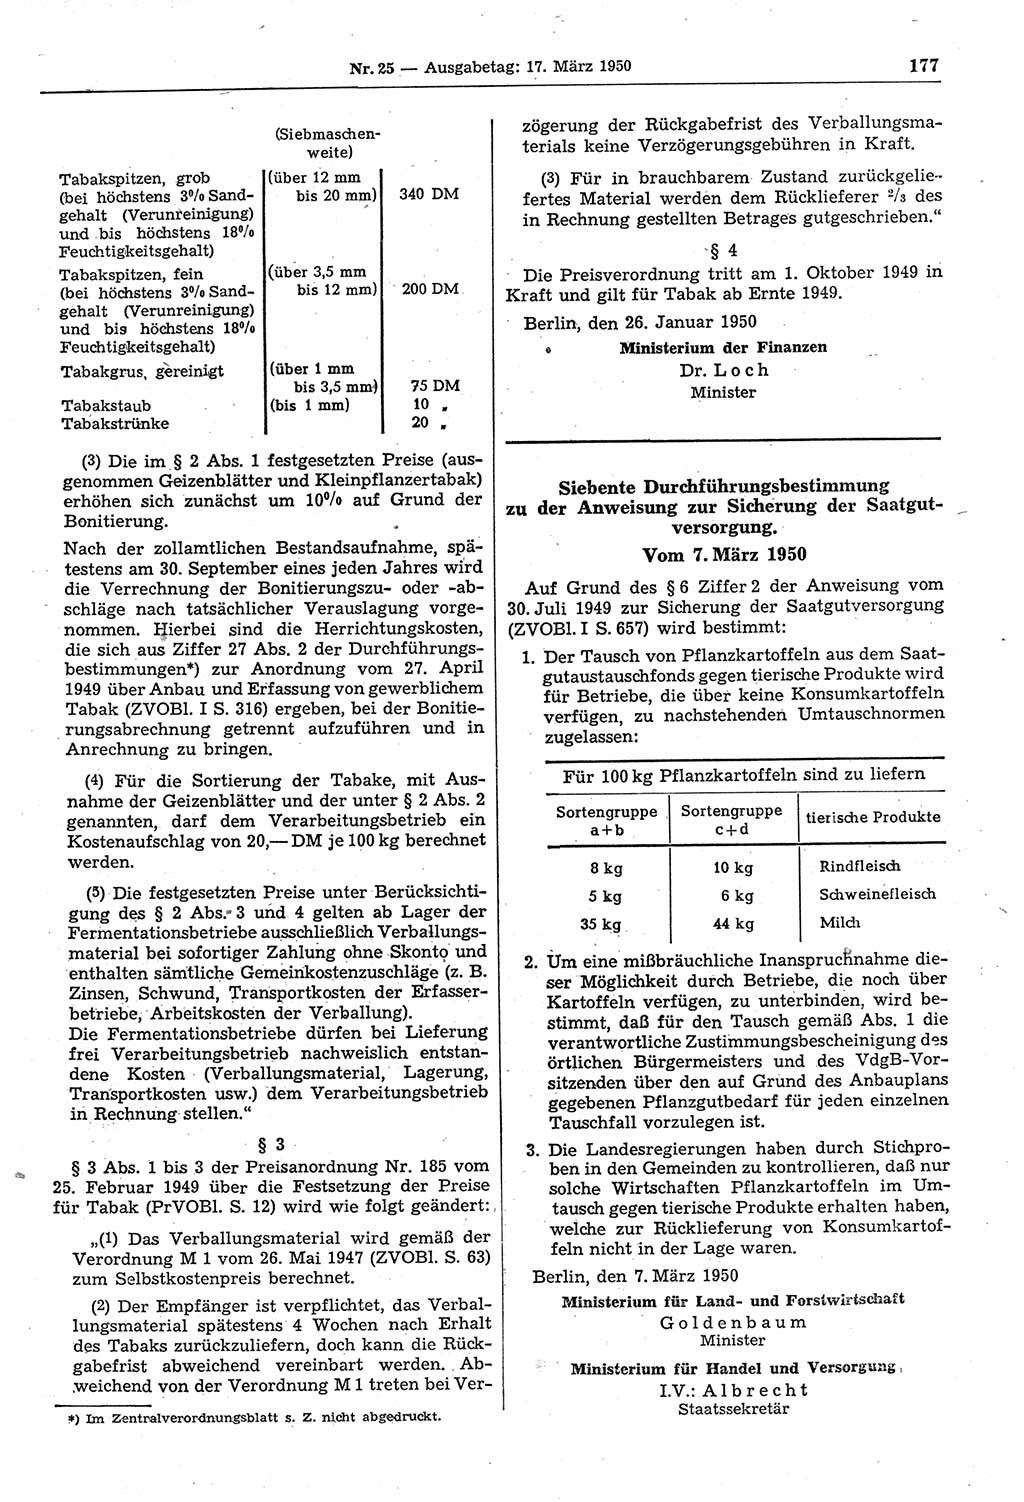 Gesetzblatt (GBl.) der Deutschen Demokratischen Republik (DDR) 1950, Seite 177 (GBl. DDR 1950, S. 177)